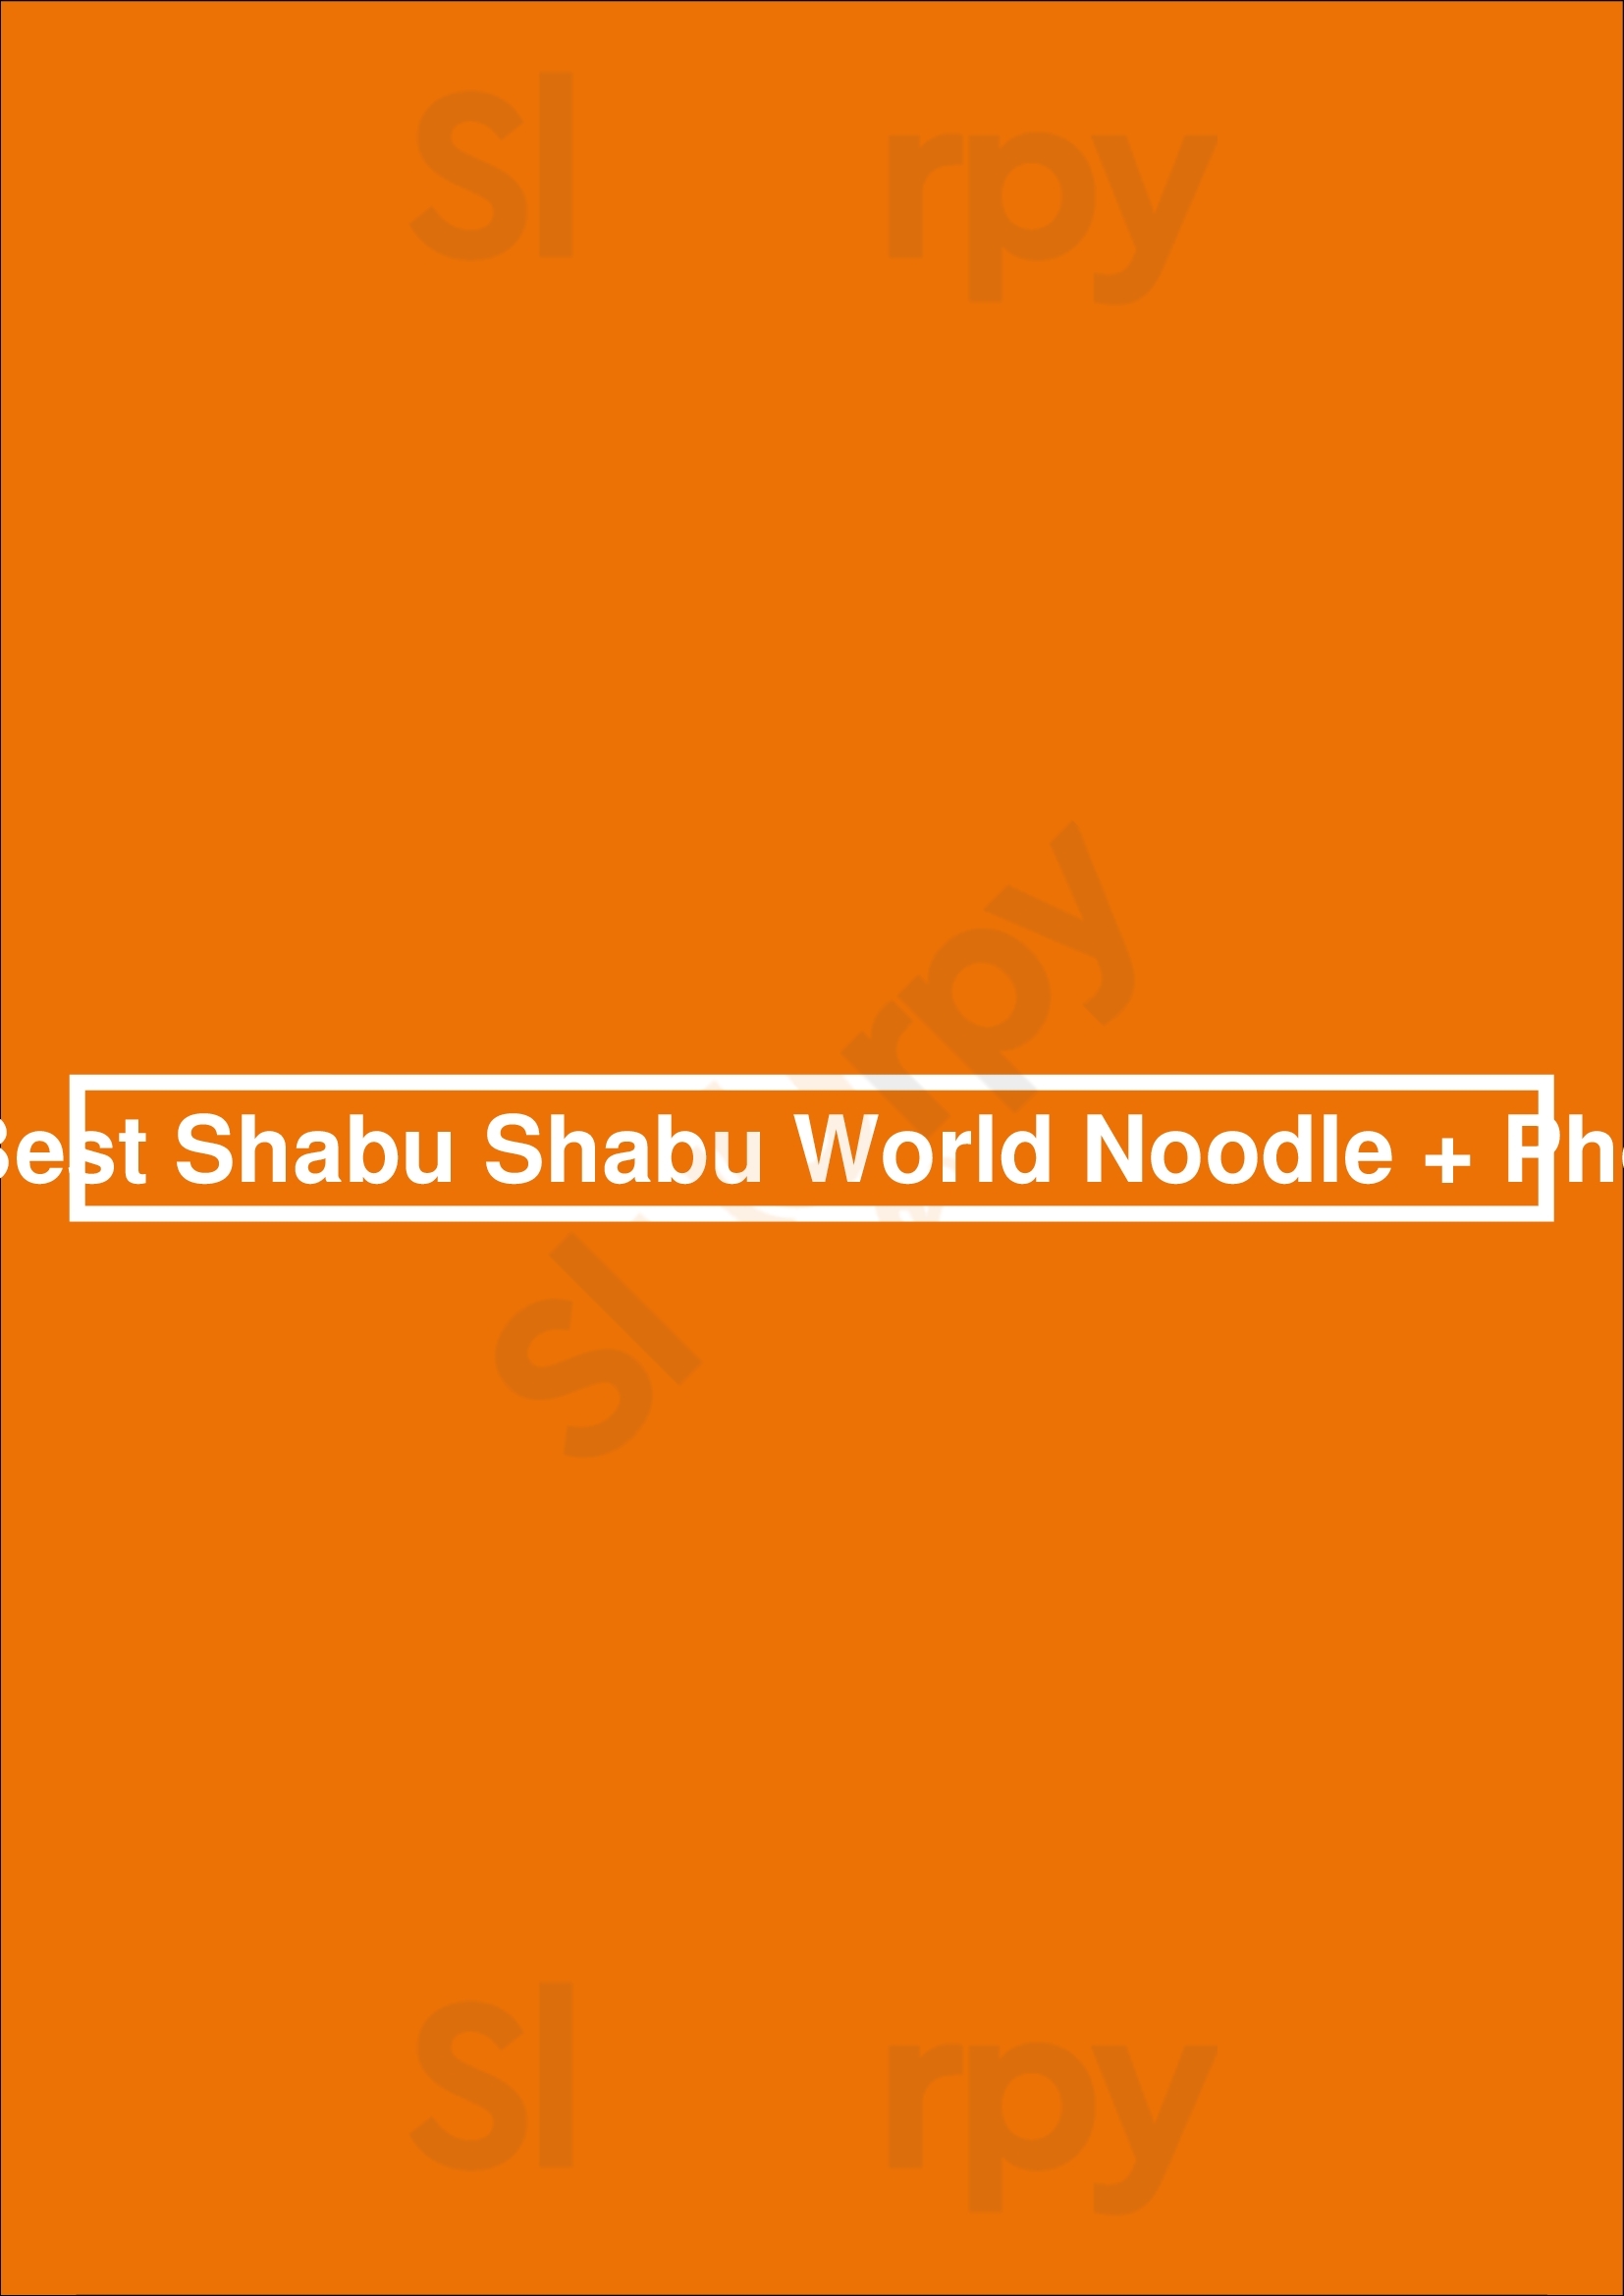 Best Shabu Shabu World Noodle + Pho Orlando Menu - 1